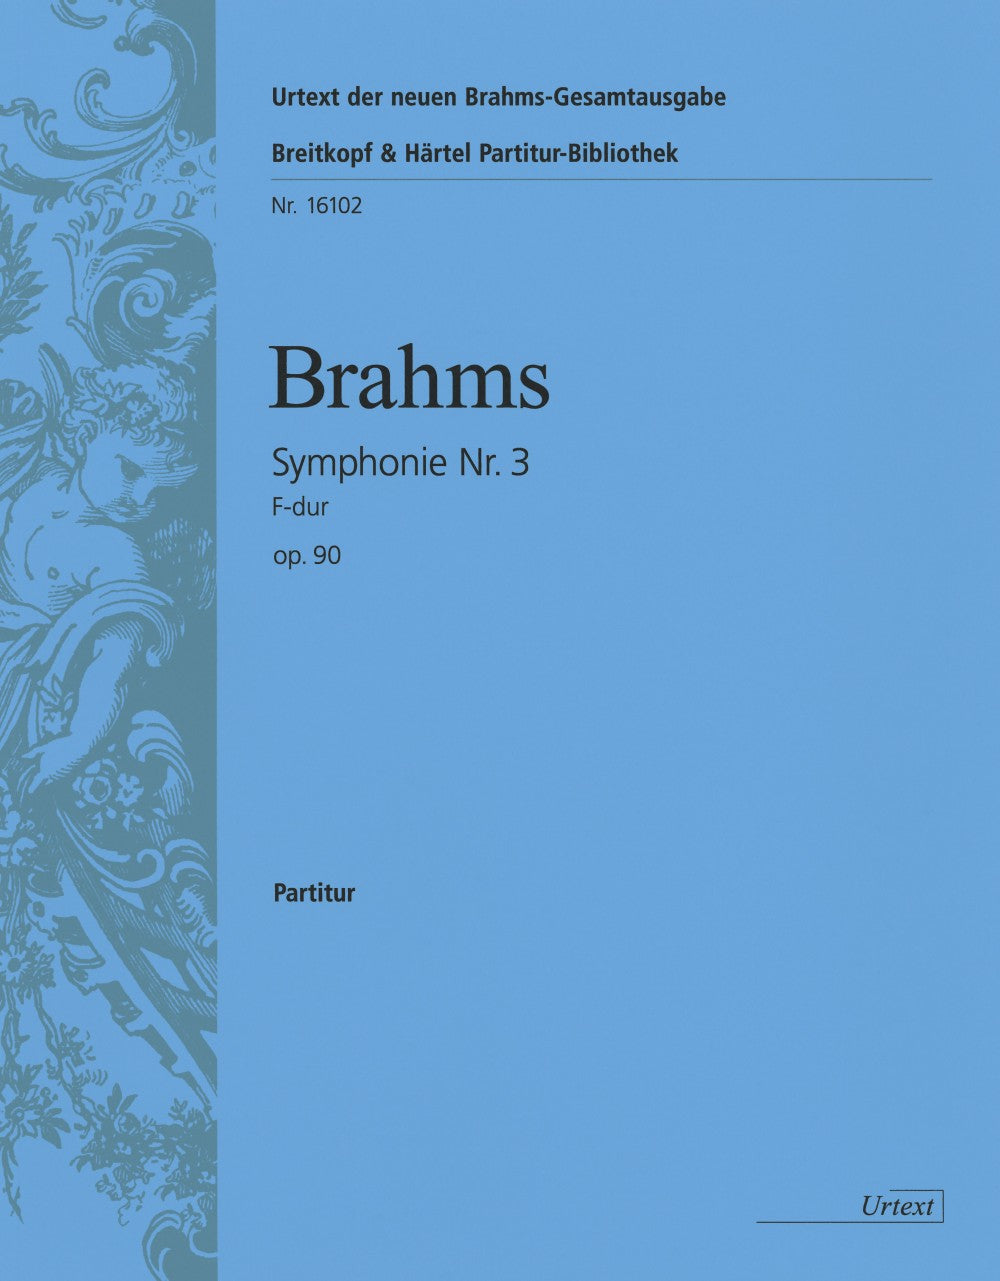 Brahms Symphony 3 in F major Op. 90